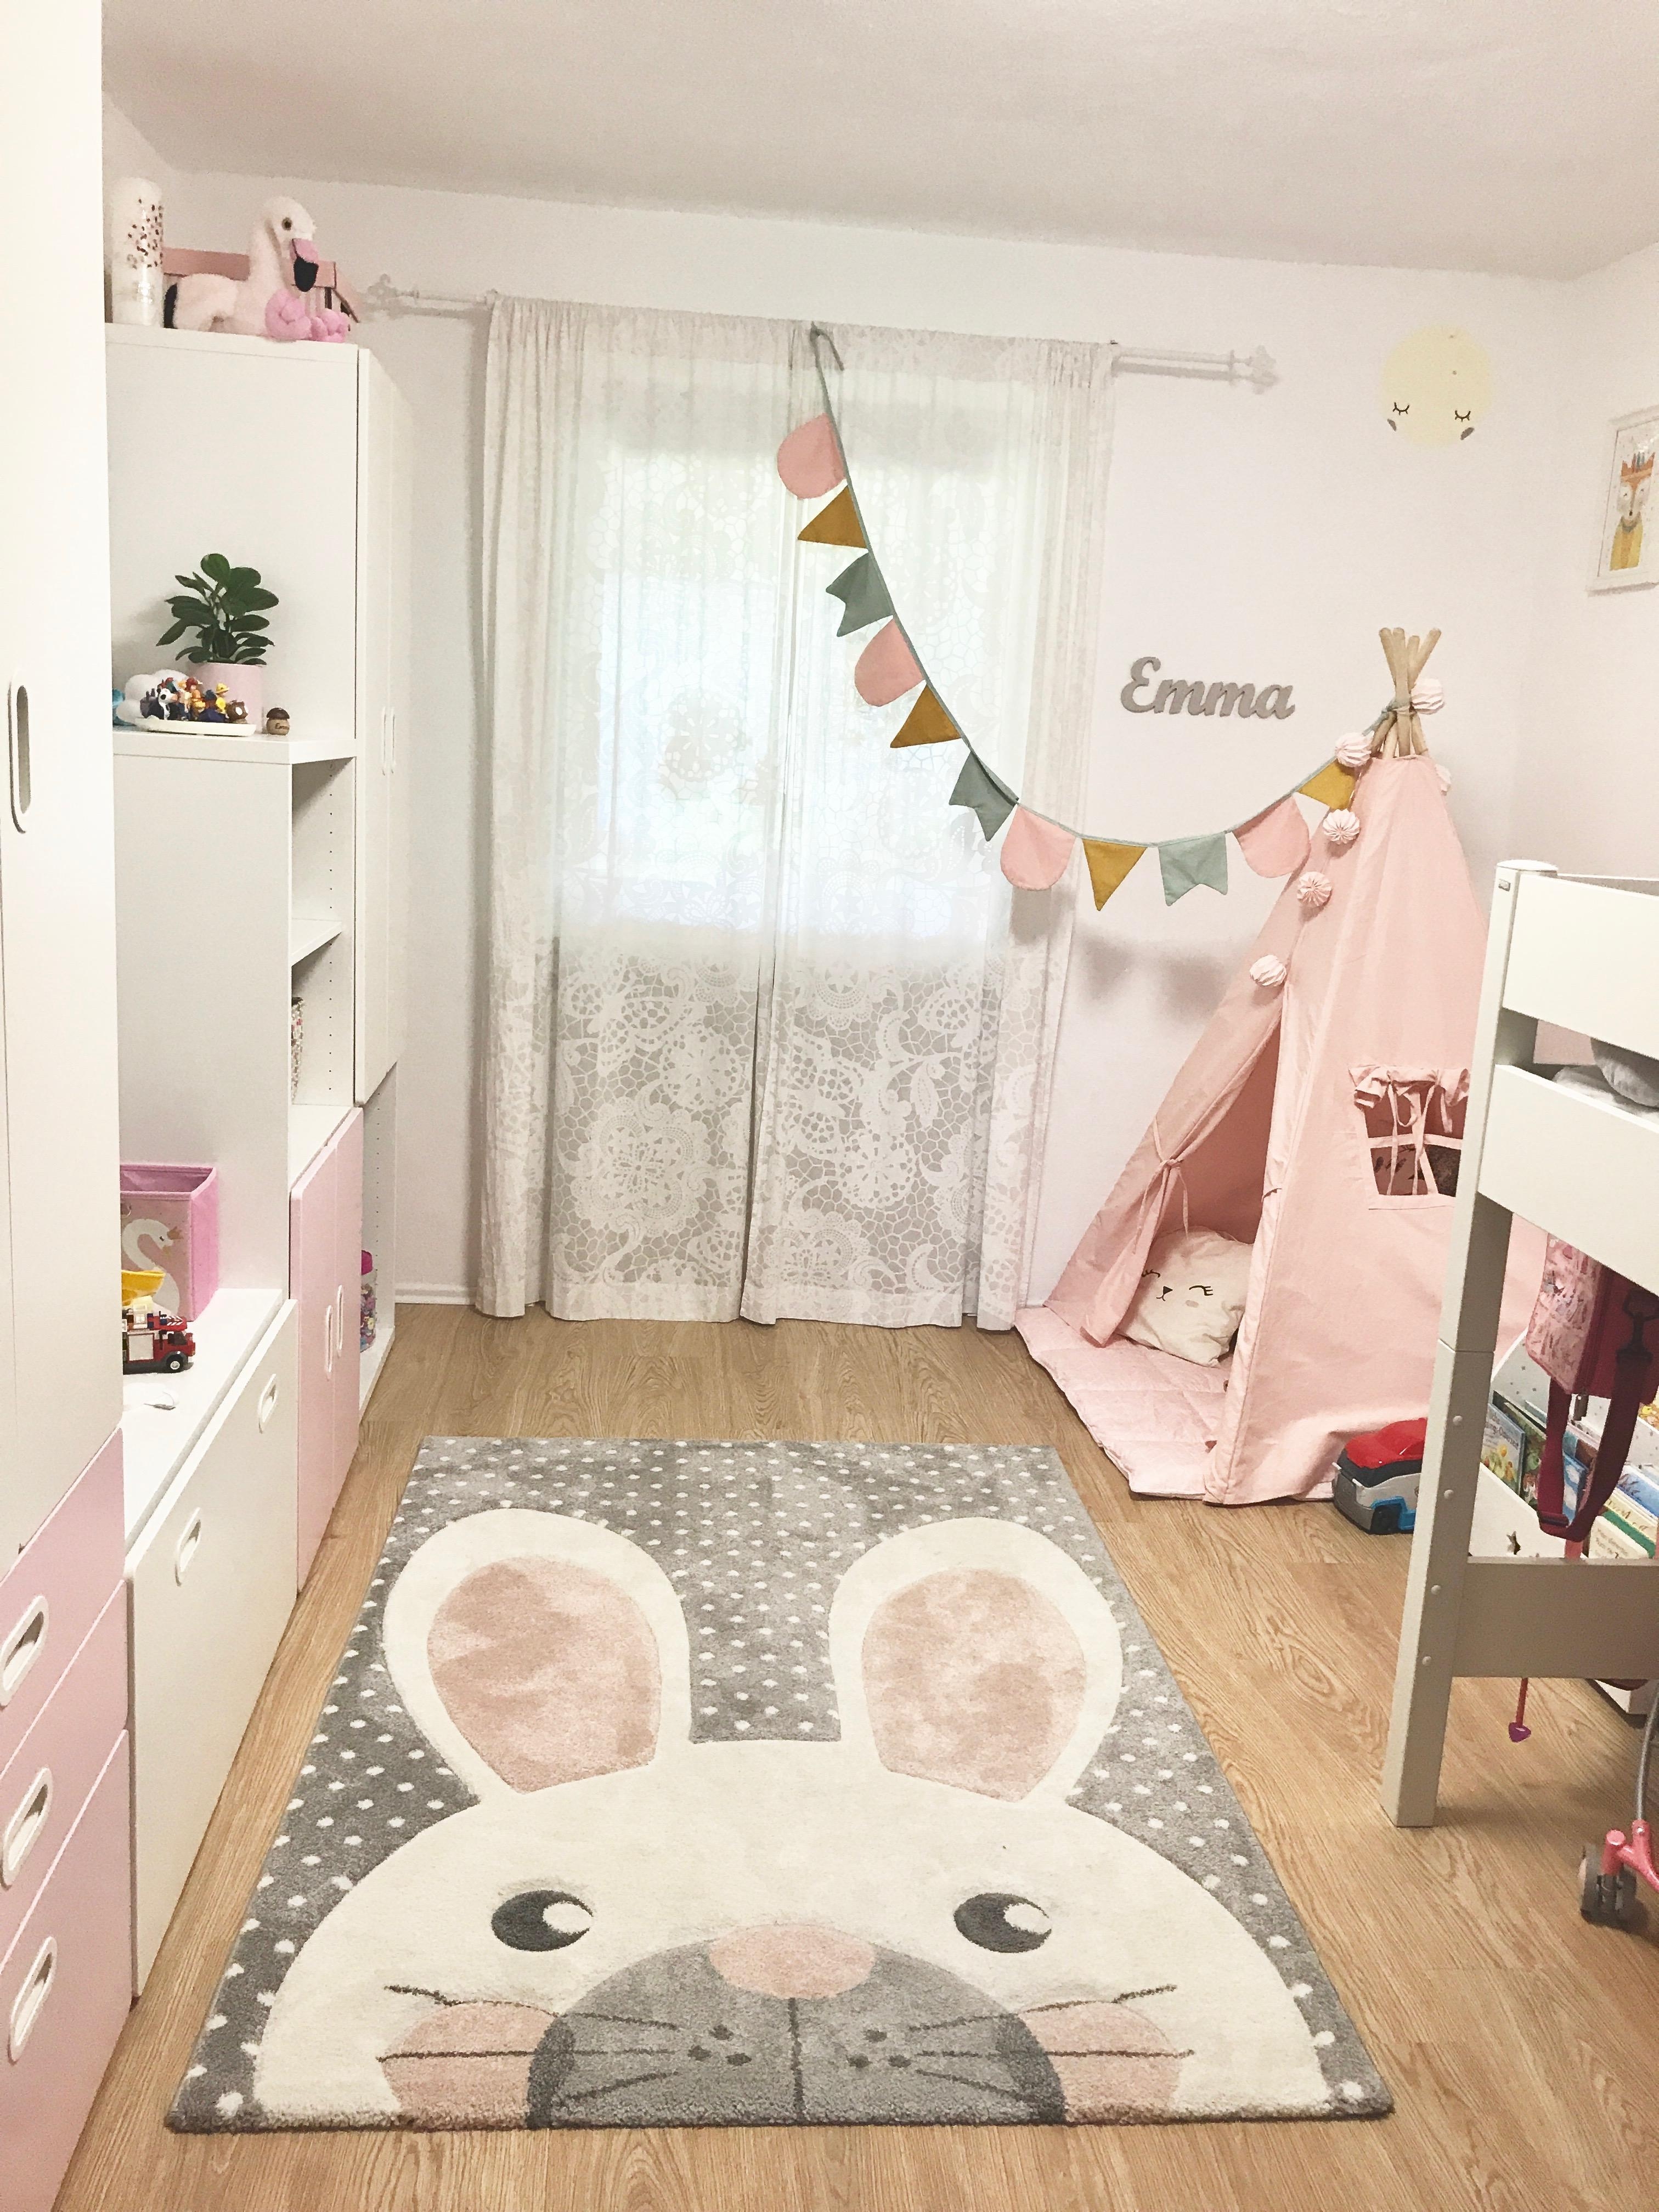 #kinderzimmer #livingchallenge

Unser vor kurzem renoviertes Mädchenzimmer mit dem geliebten Häschen-Teppich 